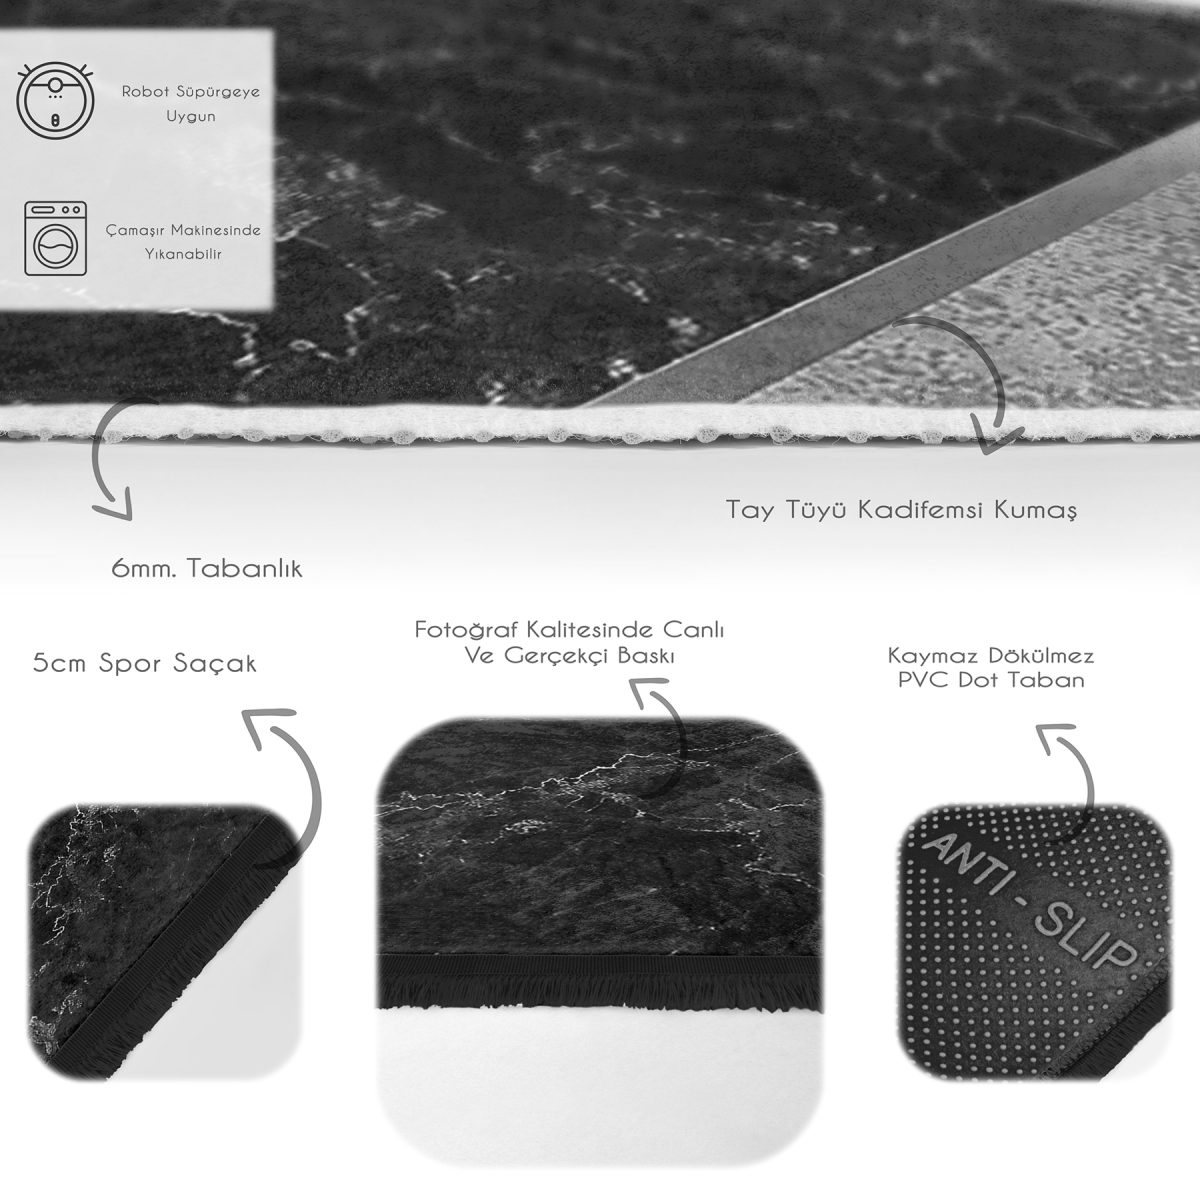 Siyah - Gri Zeminde Mermer Motifli Klasik Desenli Geometrik Sade & Şık Banyo Yatak Odası Dijital Baskılı Makinede Yıkanabilir Kaymaz Taban Saçaklı Halı Realhomes